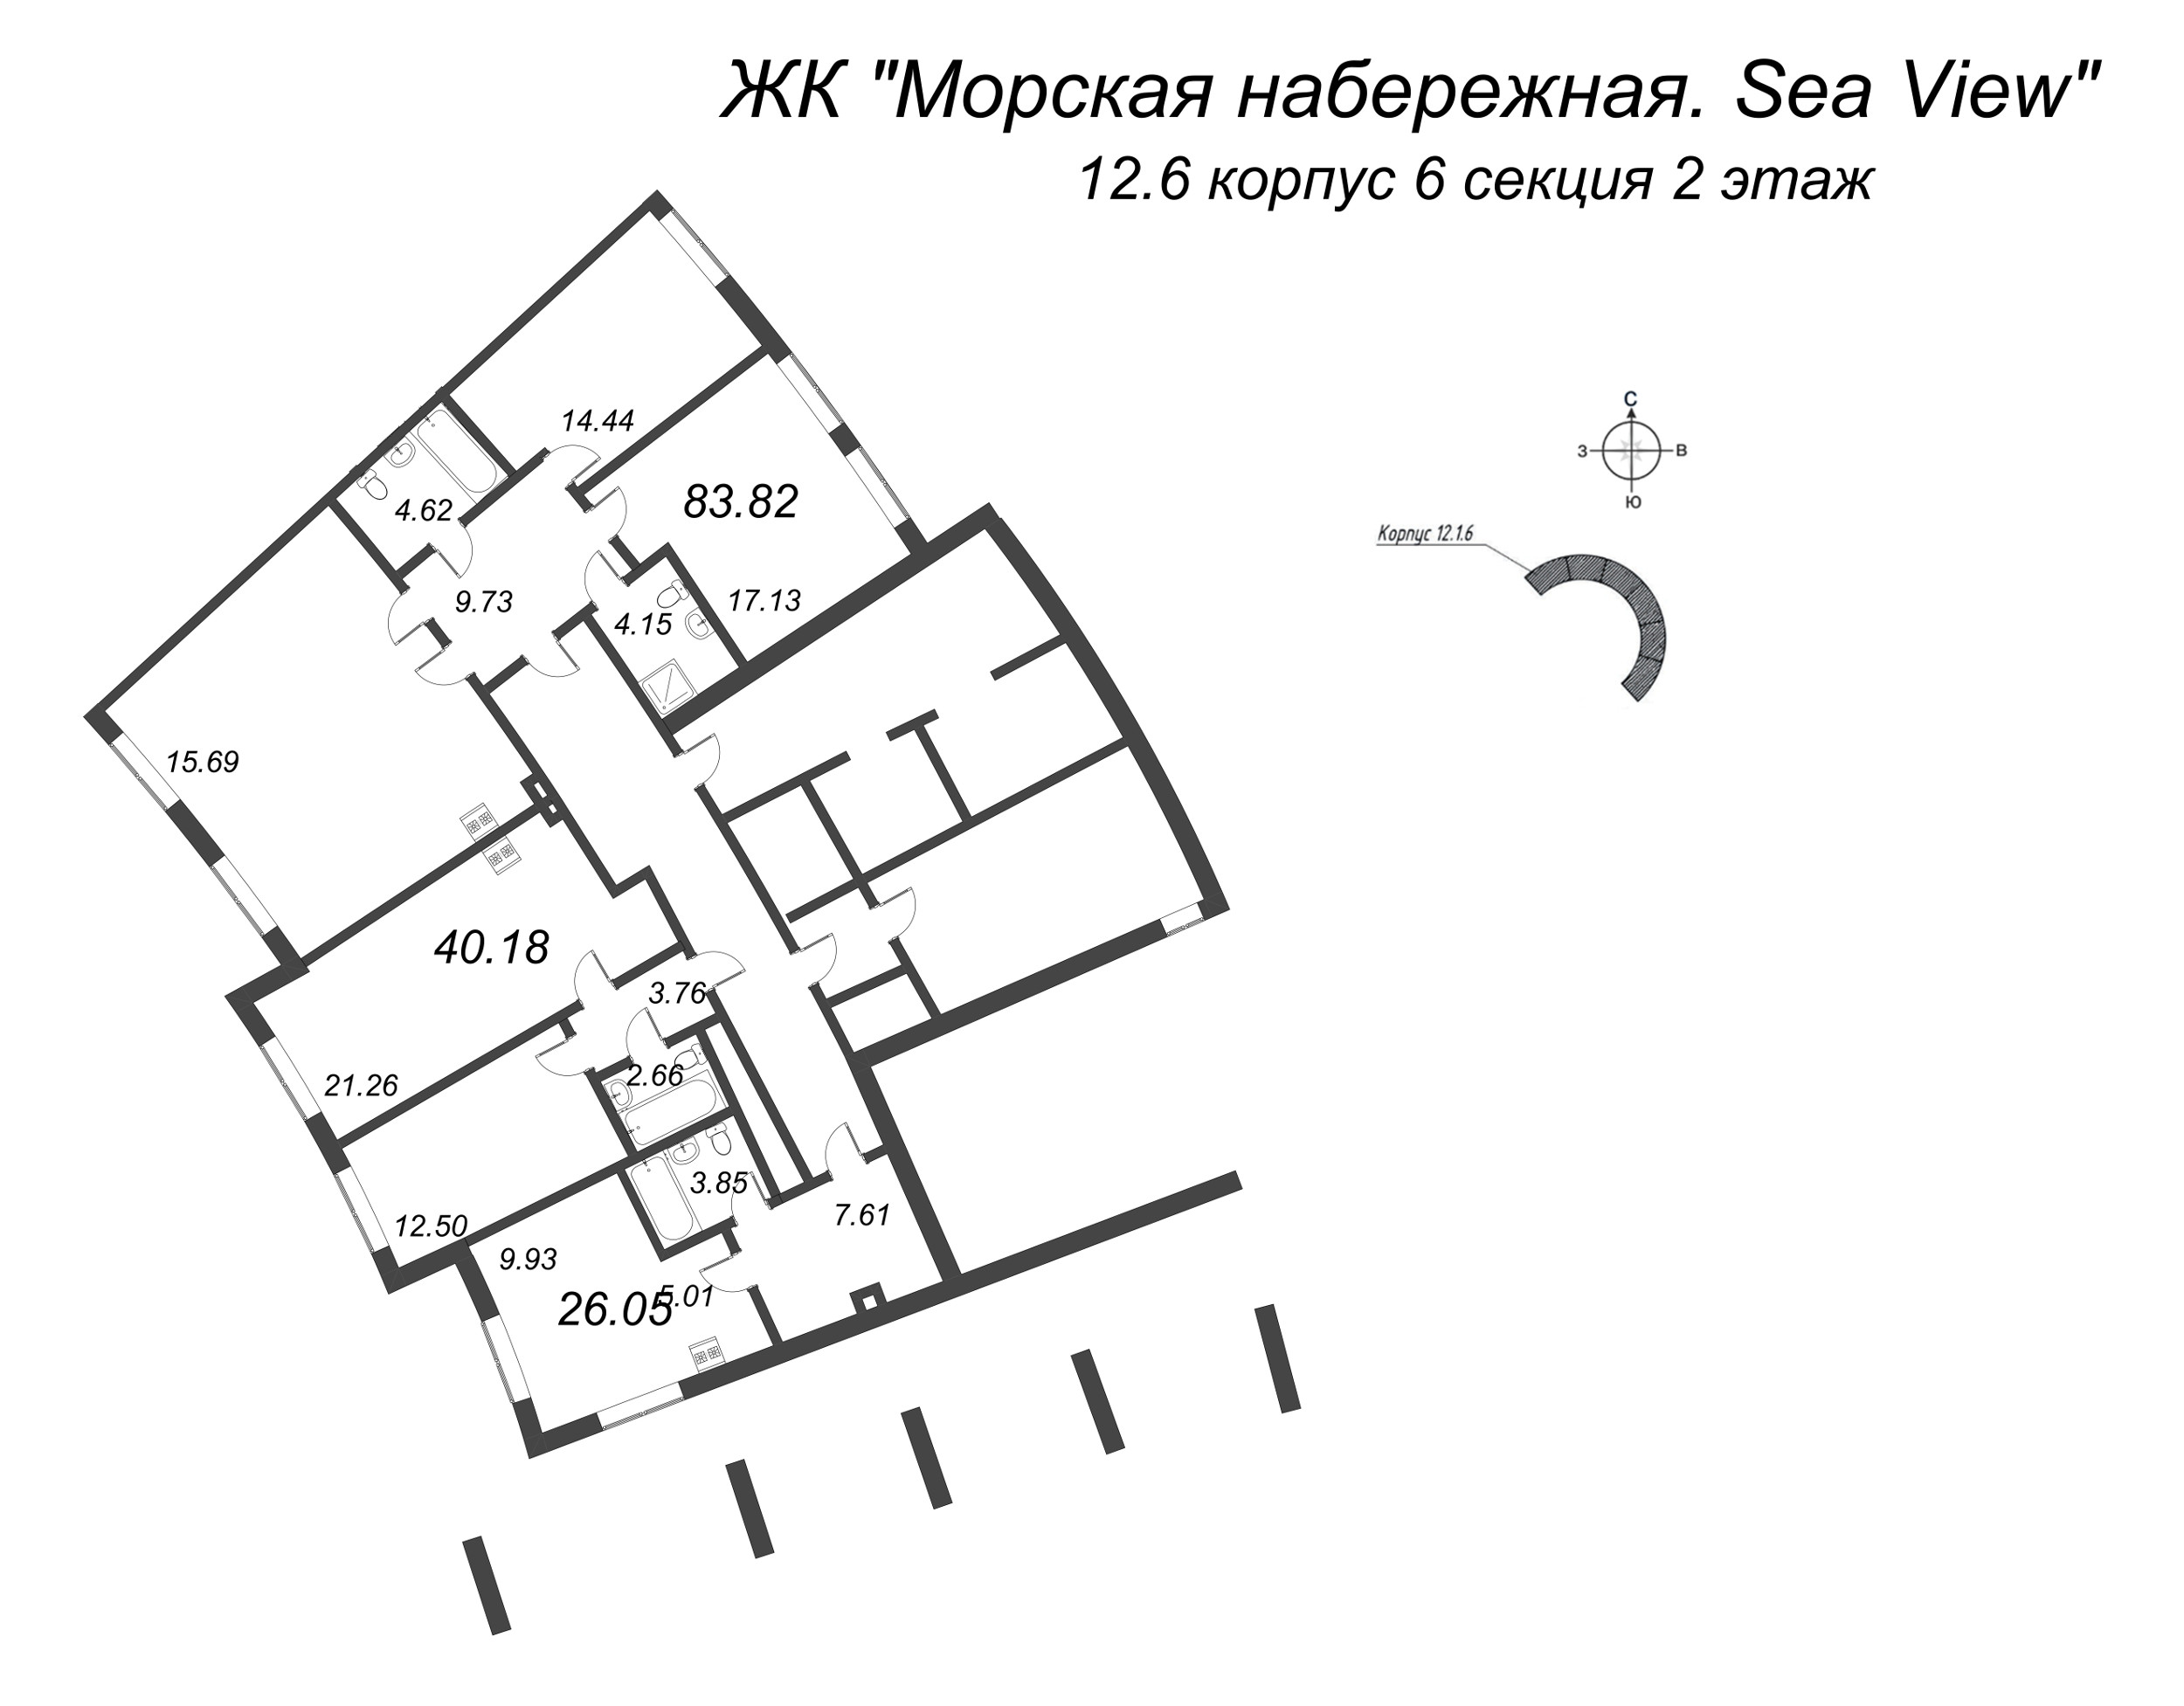 4-комнатная (Евро) квартира, 83.82 м² в ЖК "Морская набережная. SeaView" - планировка этажа